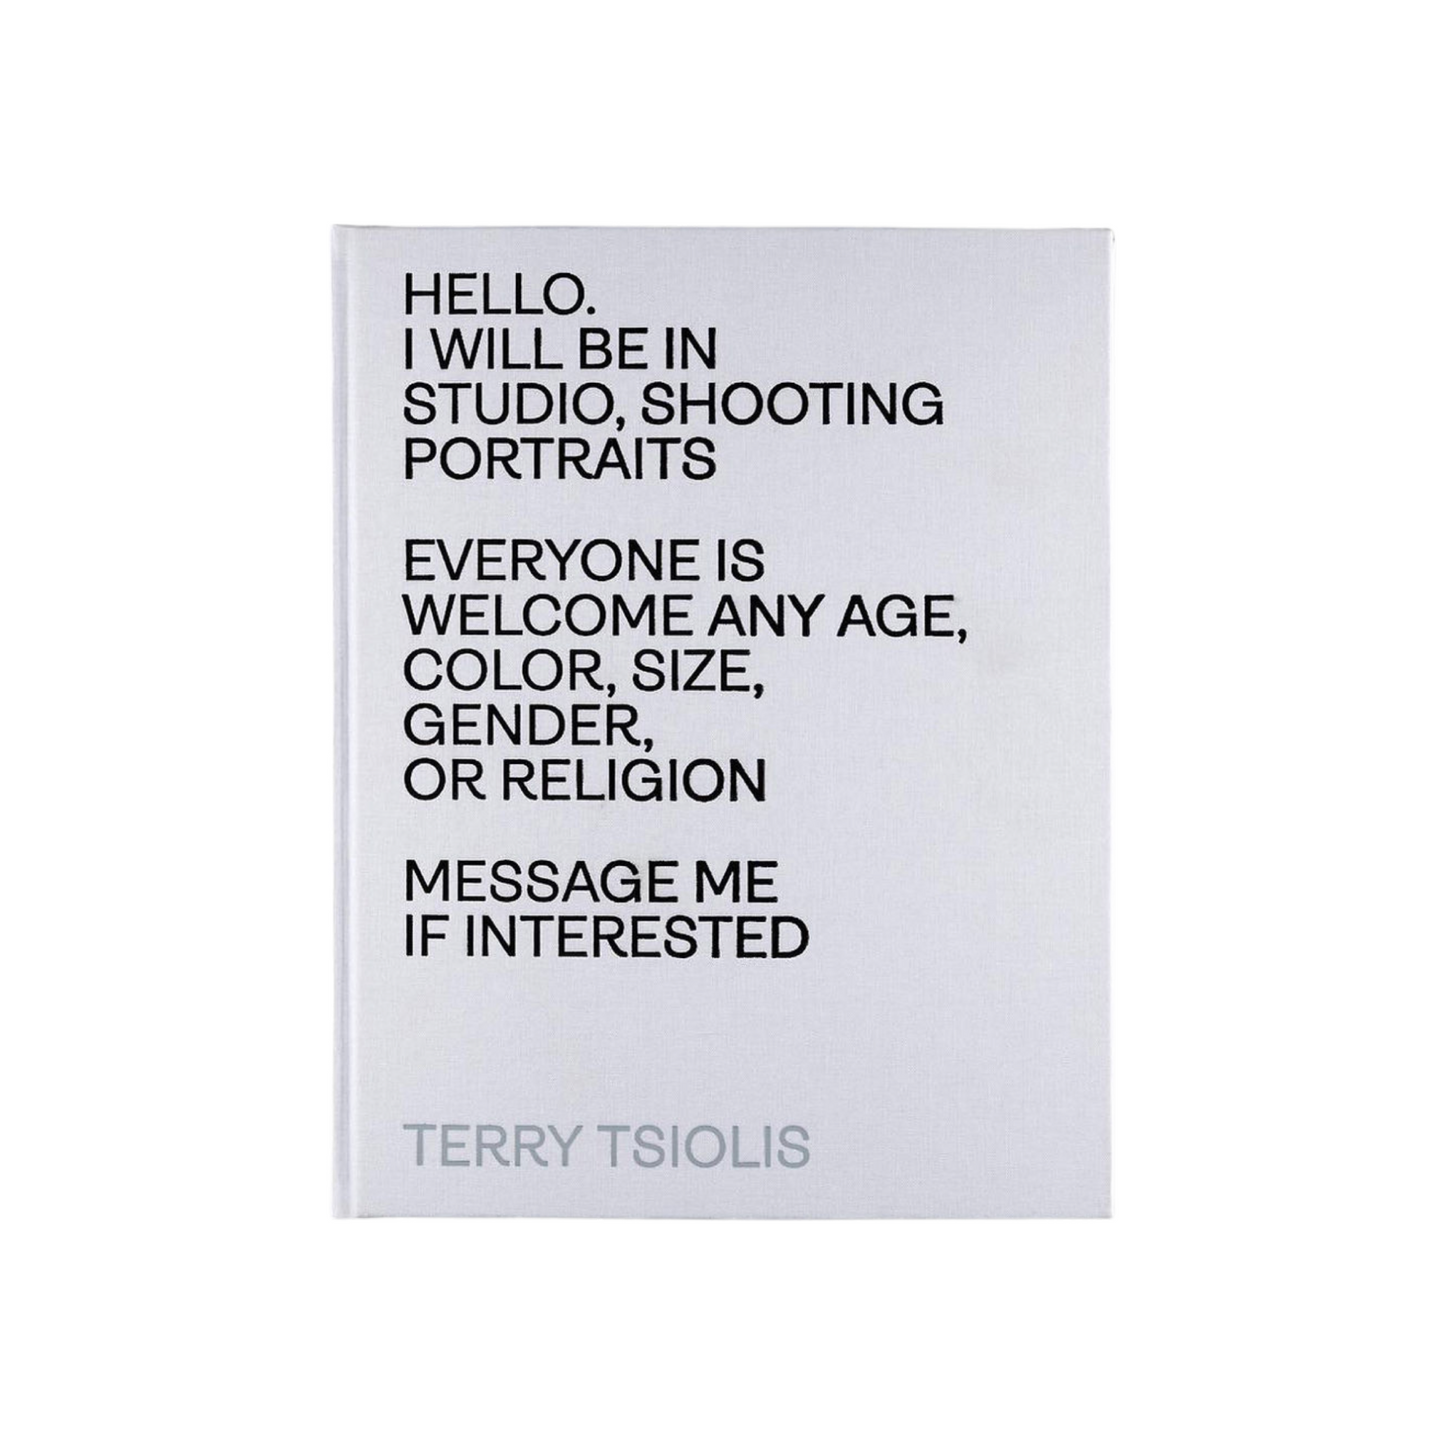 Portraits by Terry Tsiolis